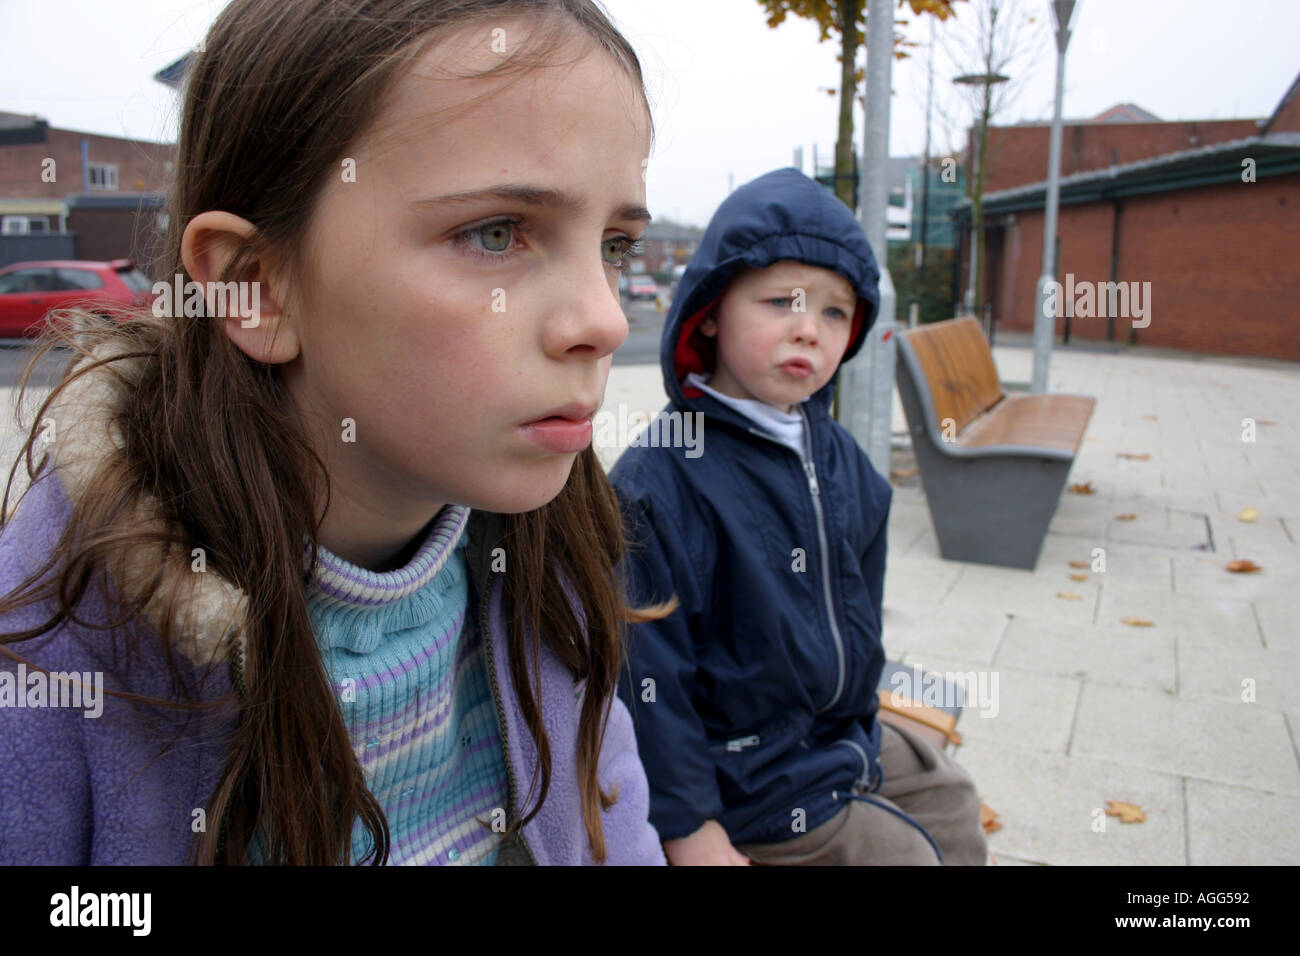 Sulky busca chica de edades comprendidas entre los 8 y cuestionamiento muchacho de 4 años sentados en un banco en zona urbana Foto de stock